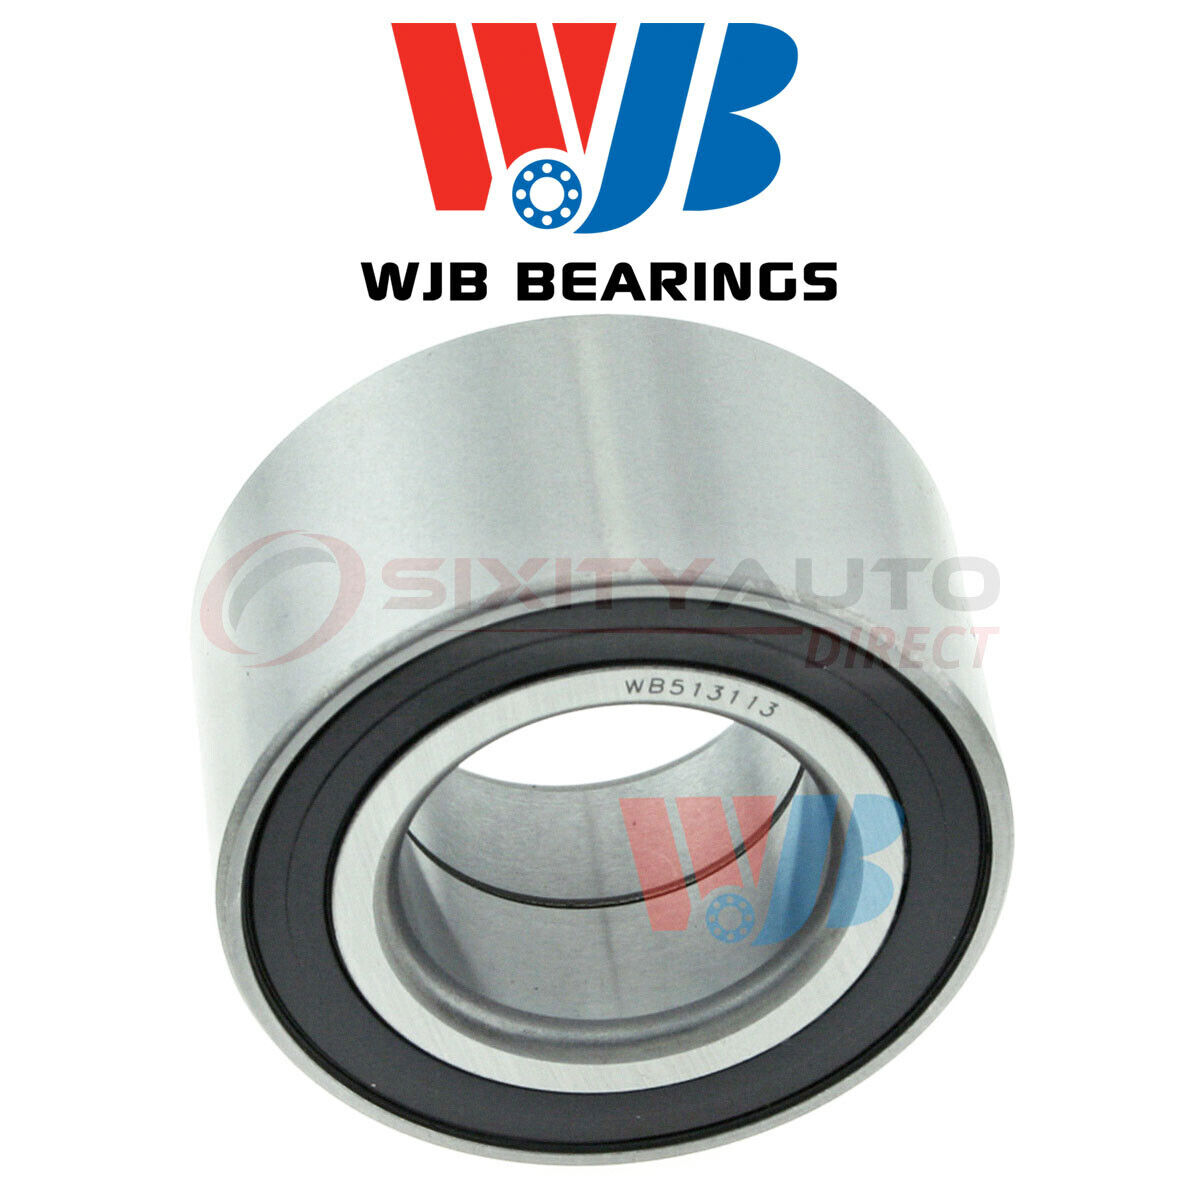 WJB Wheel Bearing for 1984-1986 BMW 325e 2.7L L6 - Axle Hub Tire vq